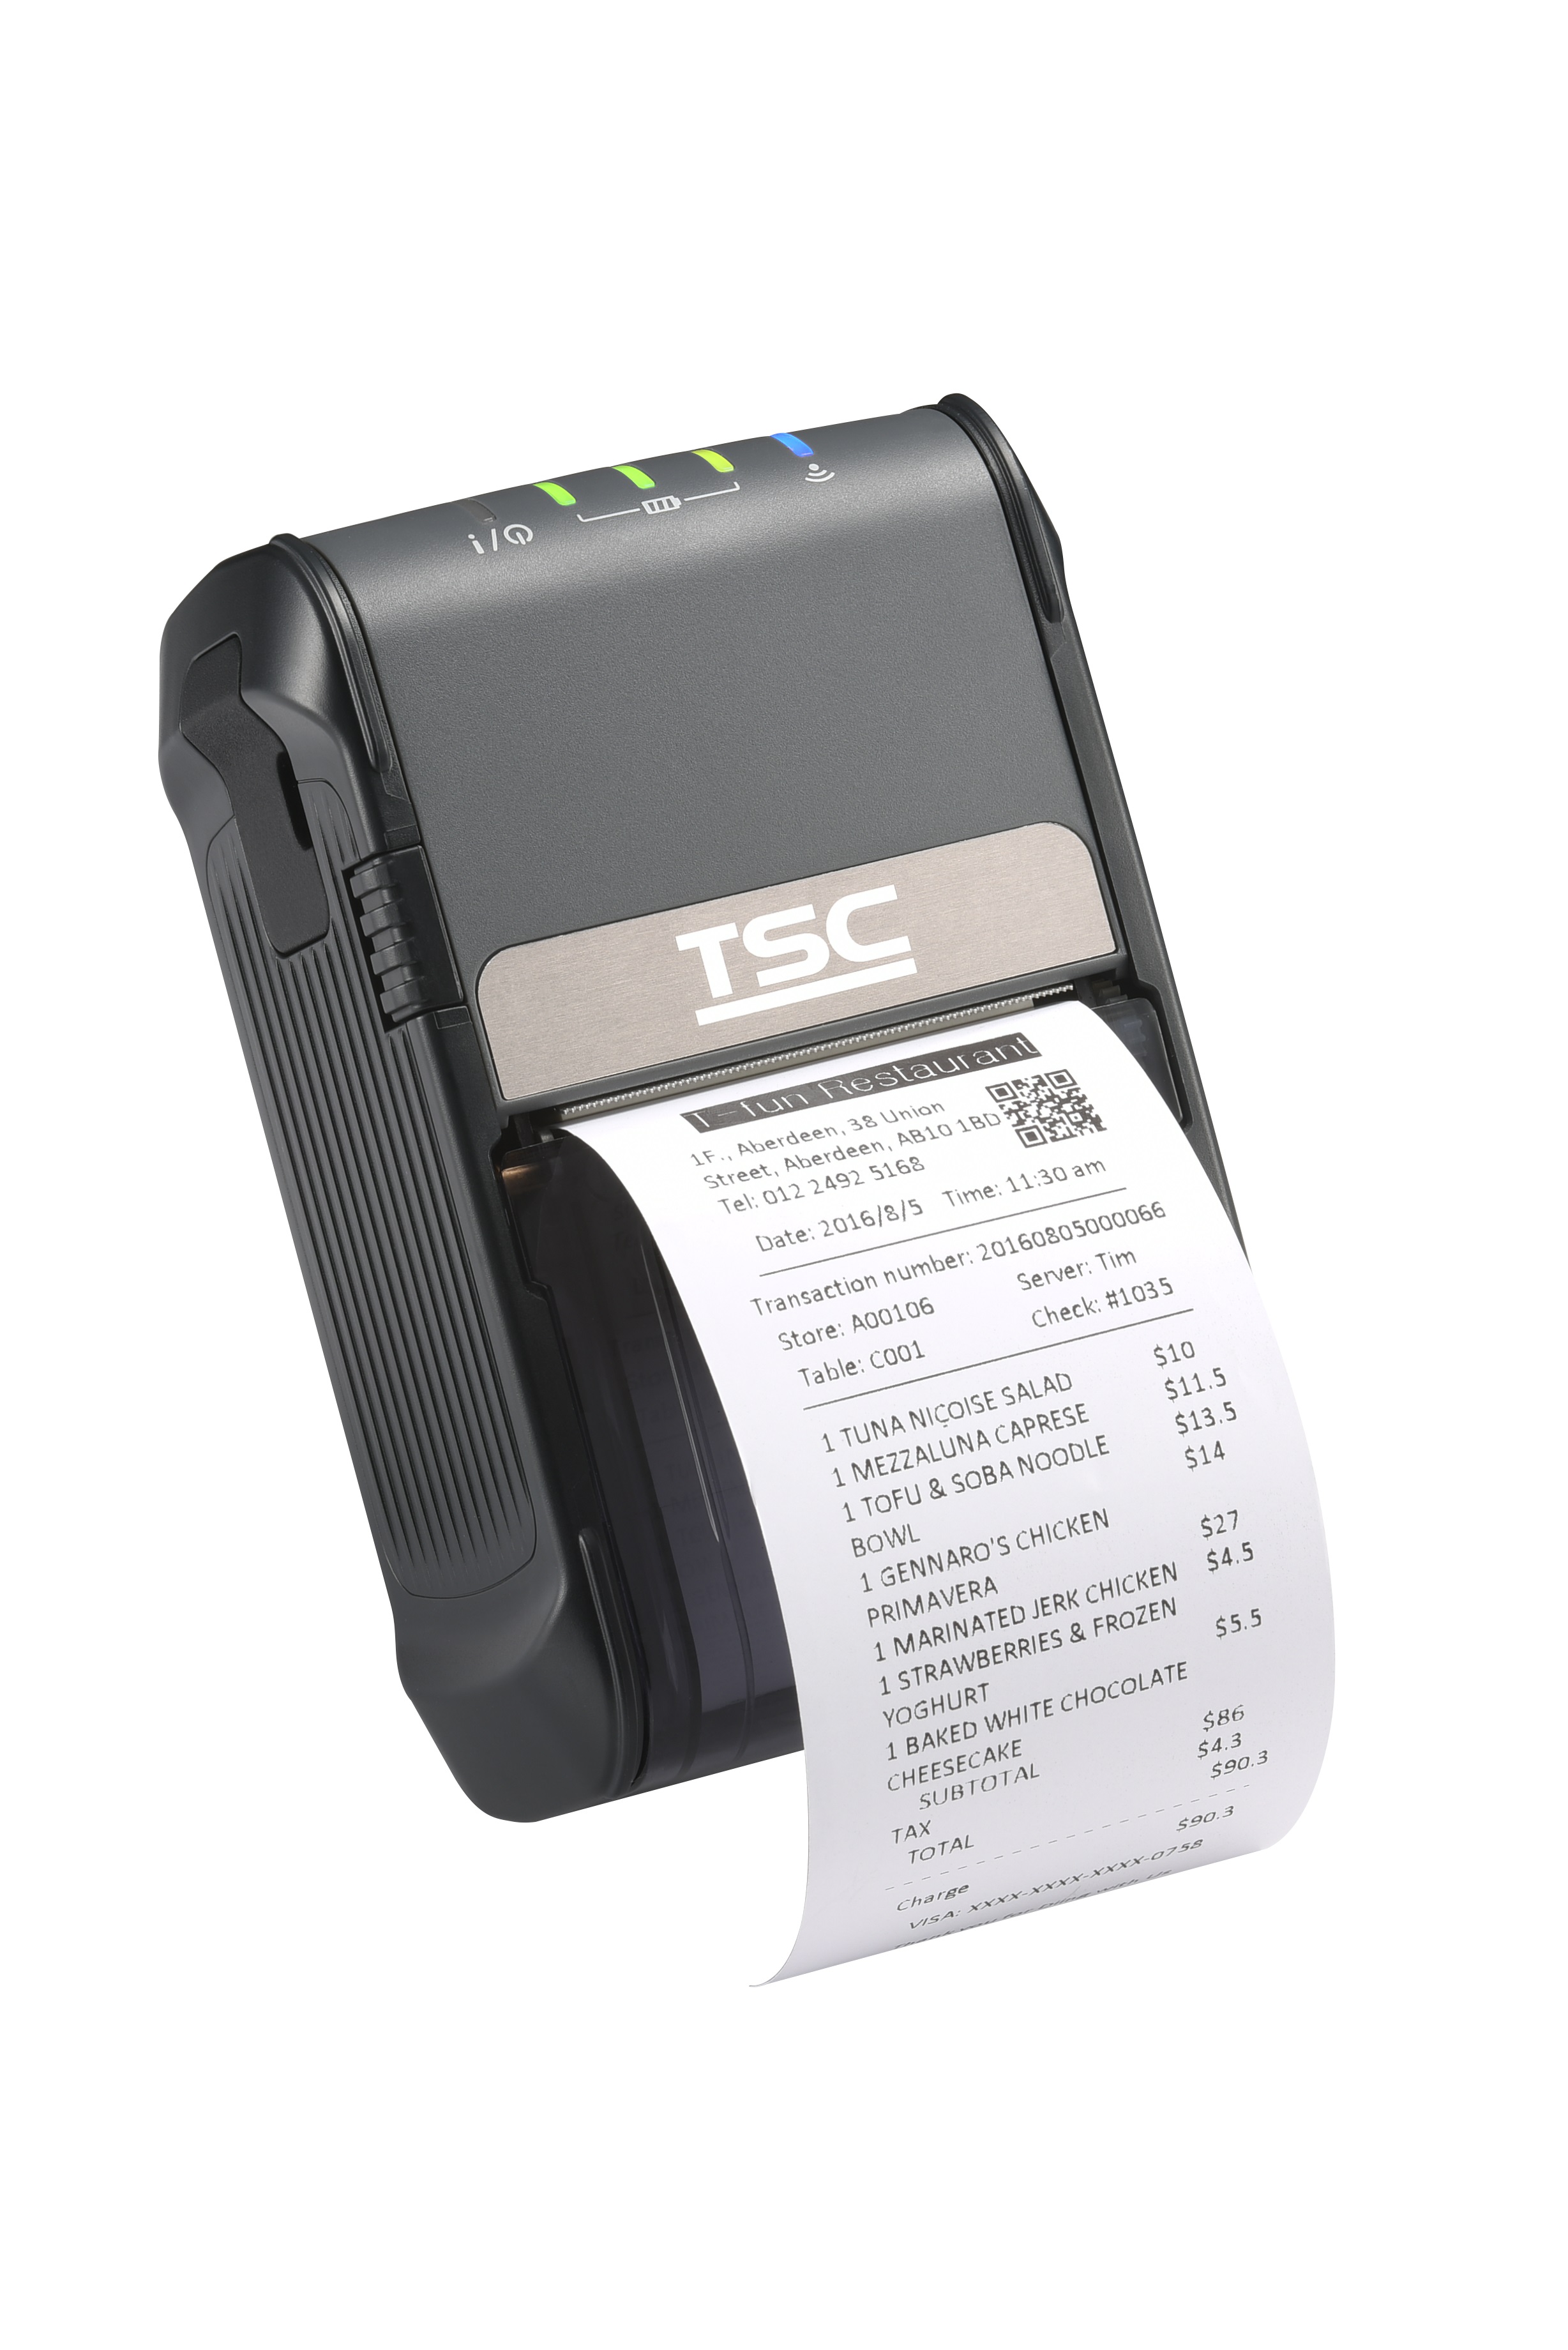 Portable Barcode Printer